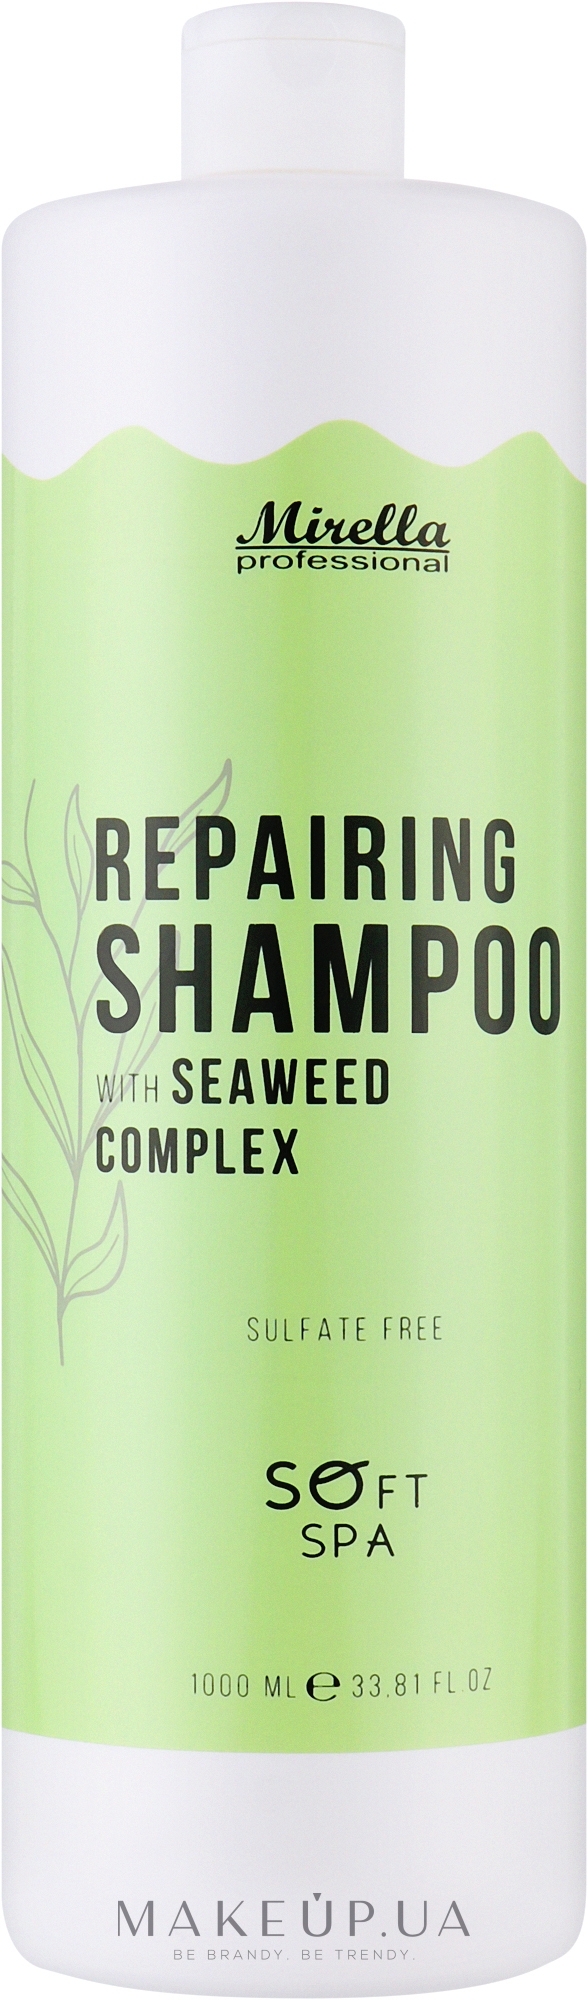 Бессульфатный шампунь с комплексом морских водорослей для восстановления волос - Mirella Professional Soft SPA Repairing Shampoo — фото 1000ml